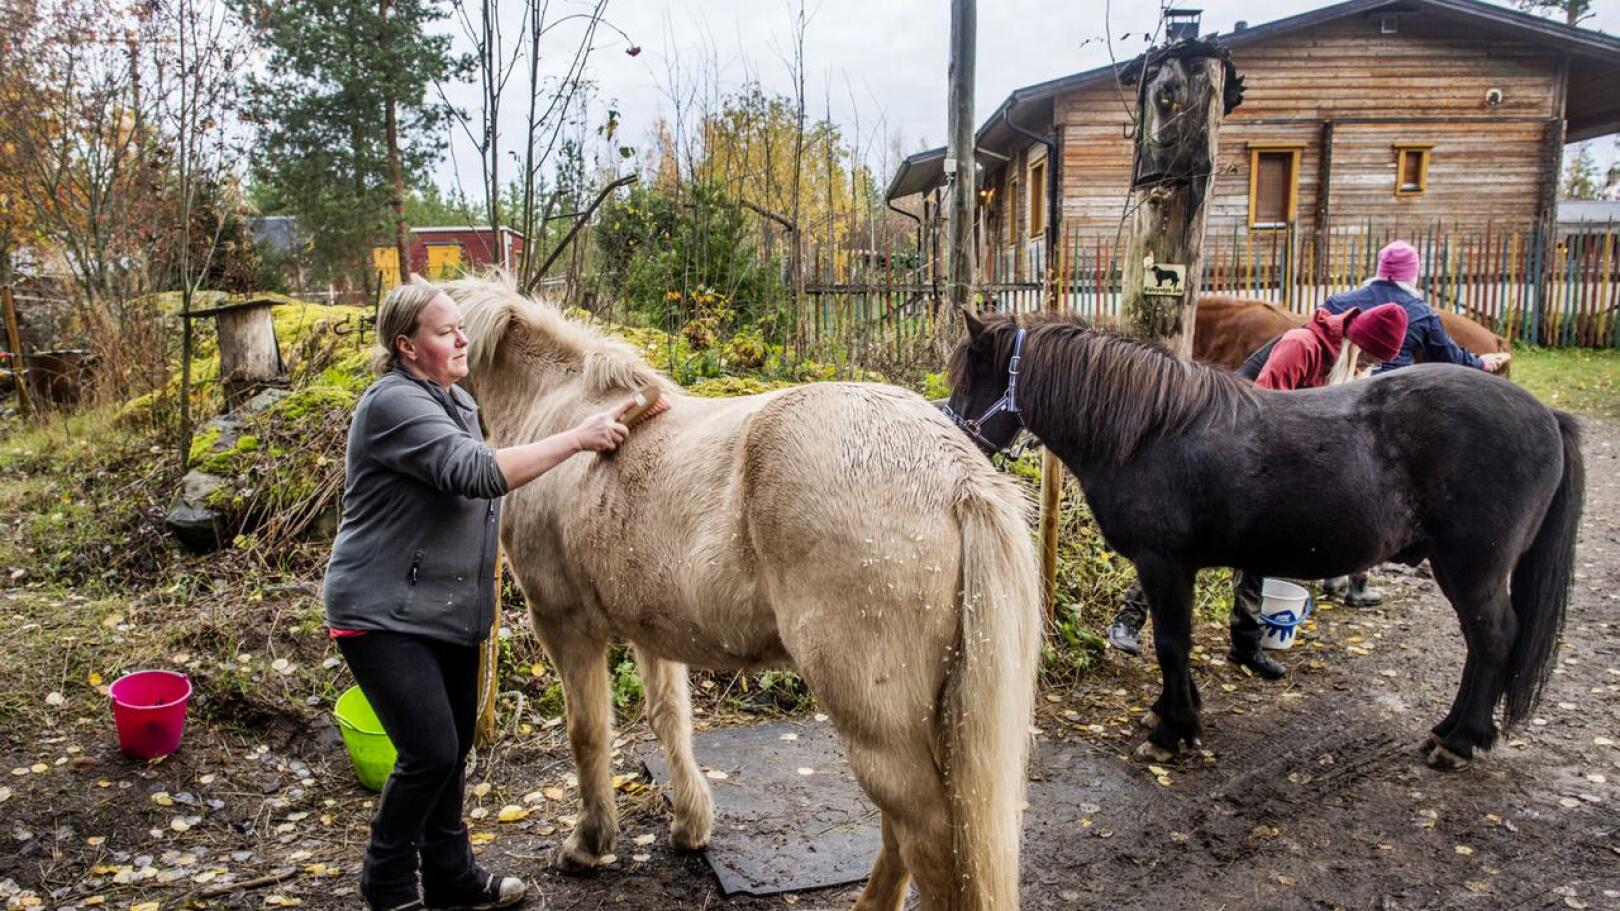 Sanna Ihajoen mielestä on tärkeää, että asiakkaat saavat tehdä hevosten kanssa muutakin kuin ratsastaa.